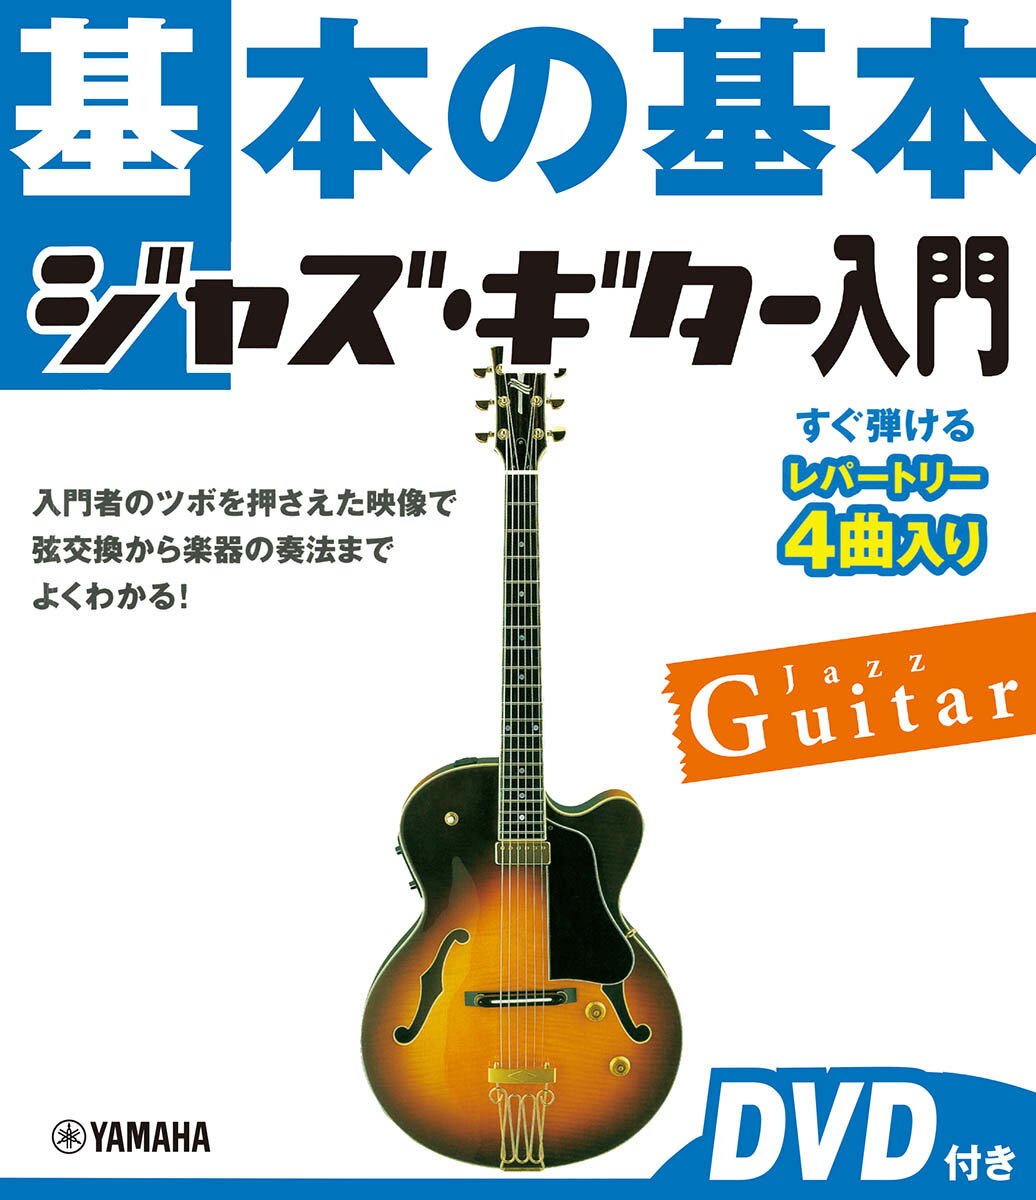 基本の基本 ジャズ・ギター入門 DVD付き